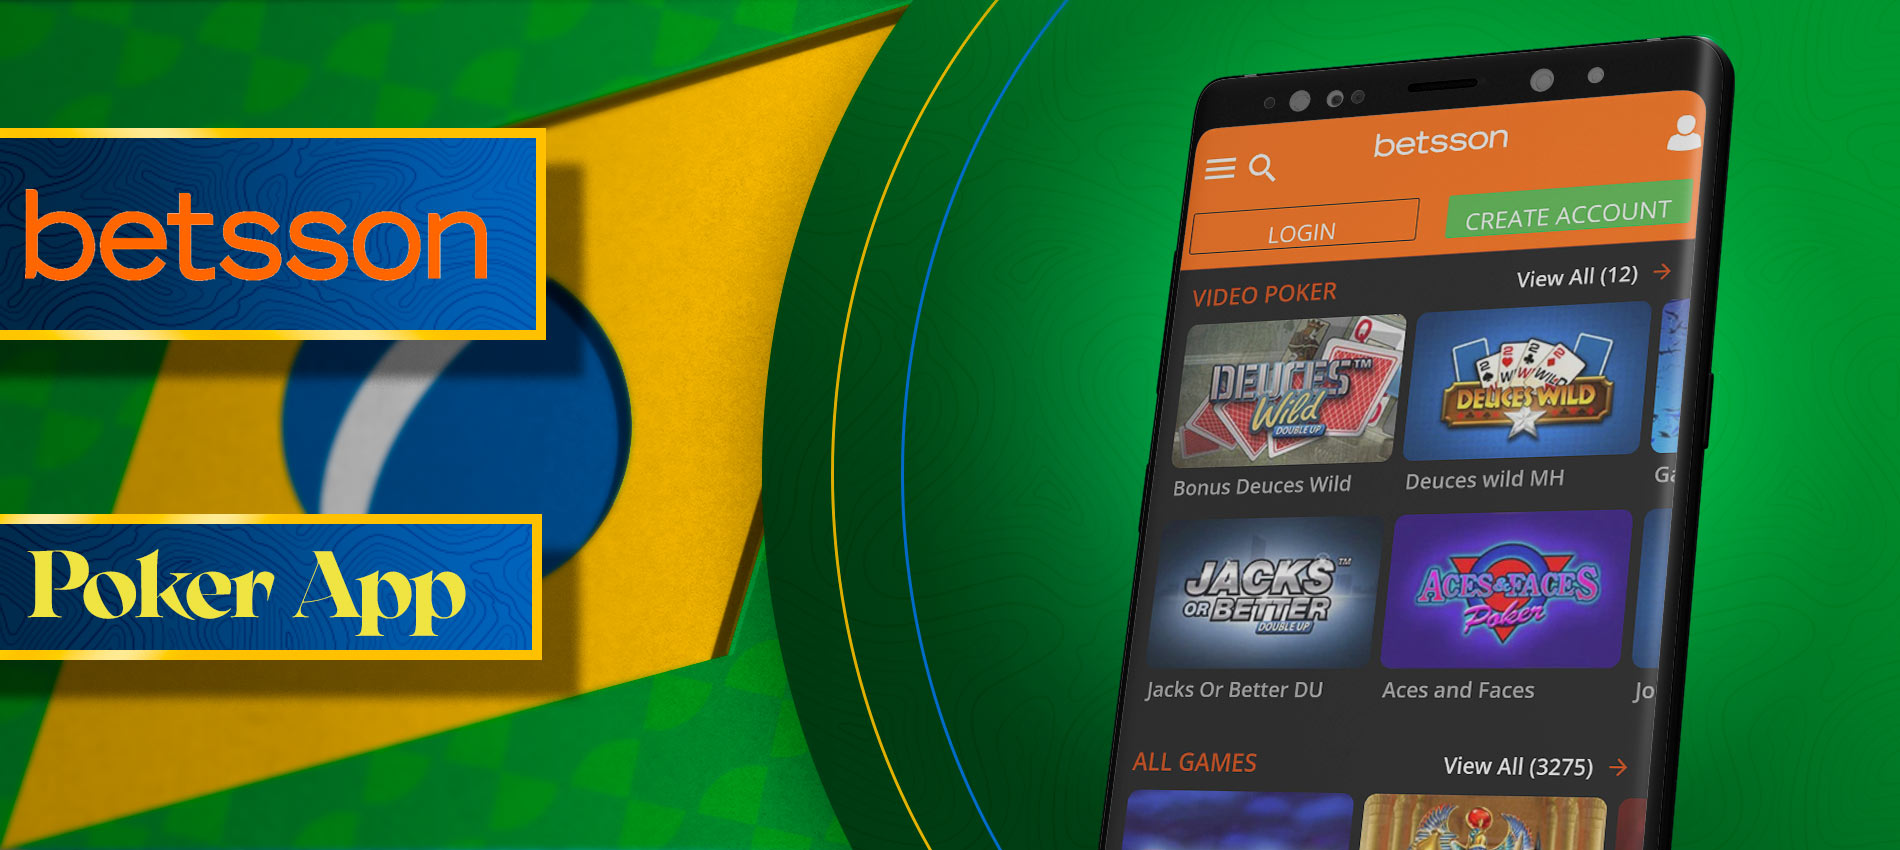 Betsson App - Baixar Betsson apk para Android e iPhone no Brasil